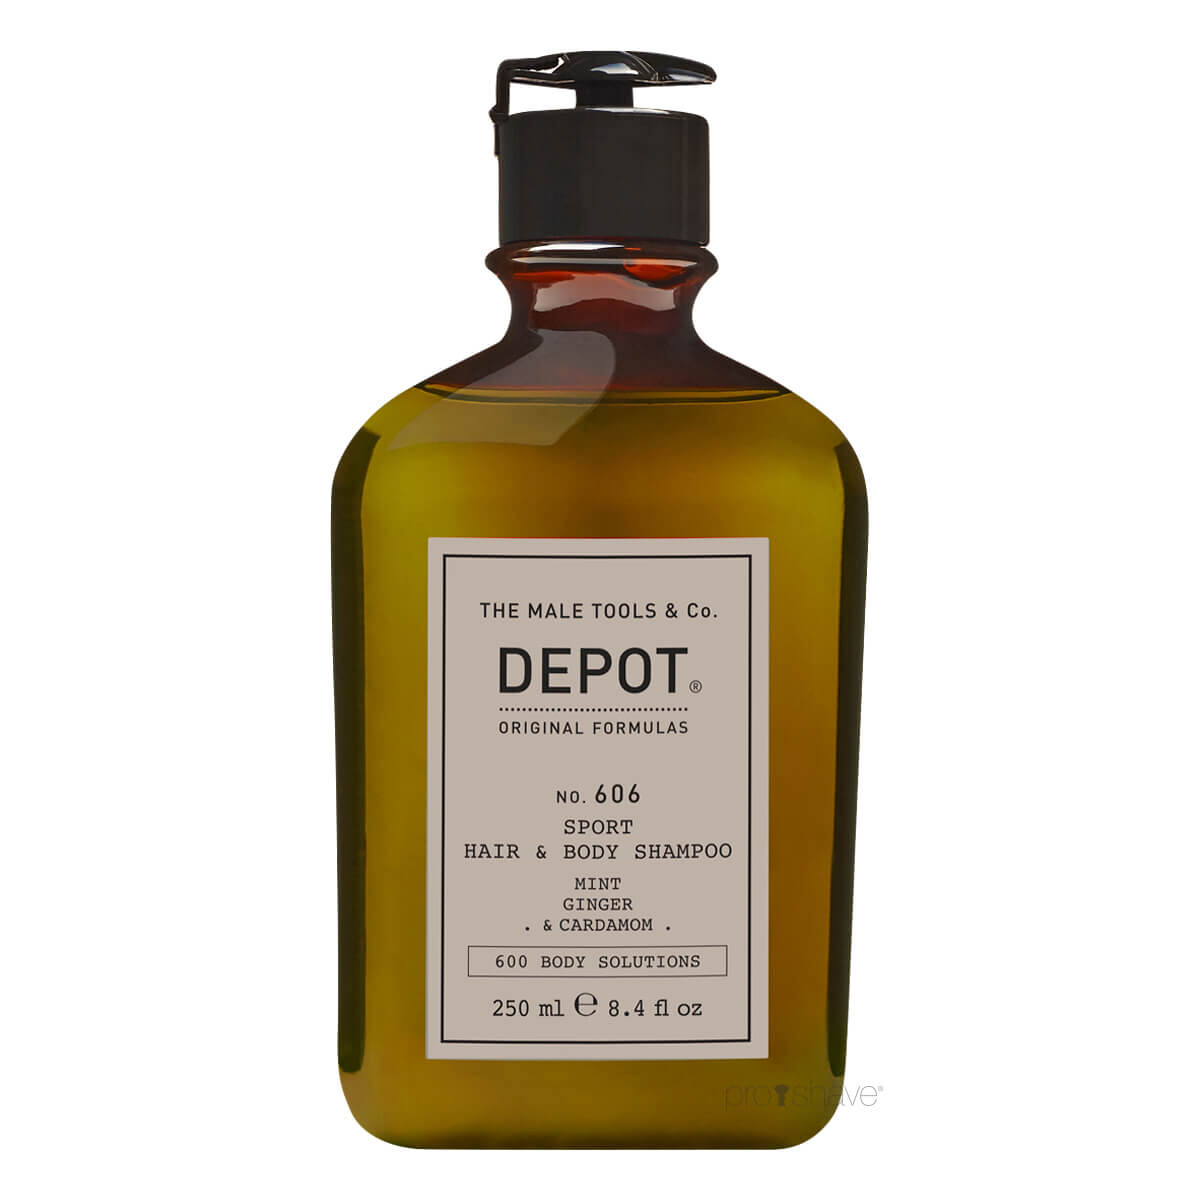 Billede af Depot Sport Hair & Body Shampoo, No. 606, 250 ml.